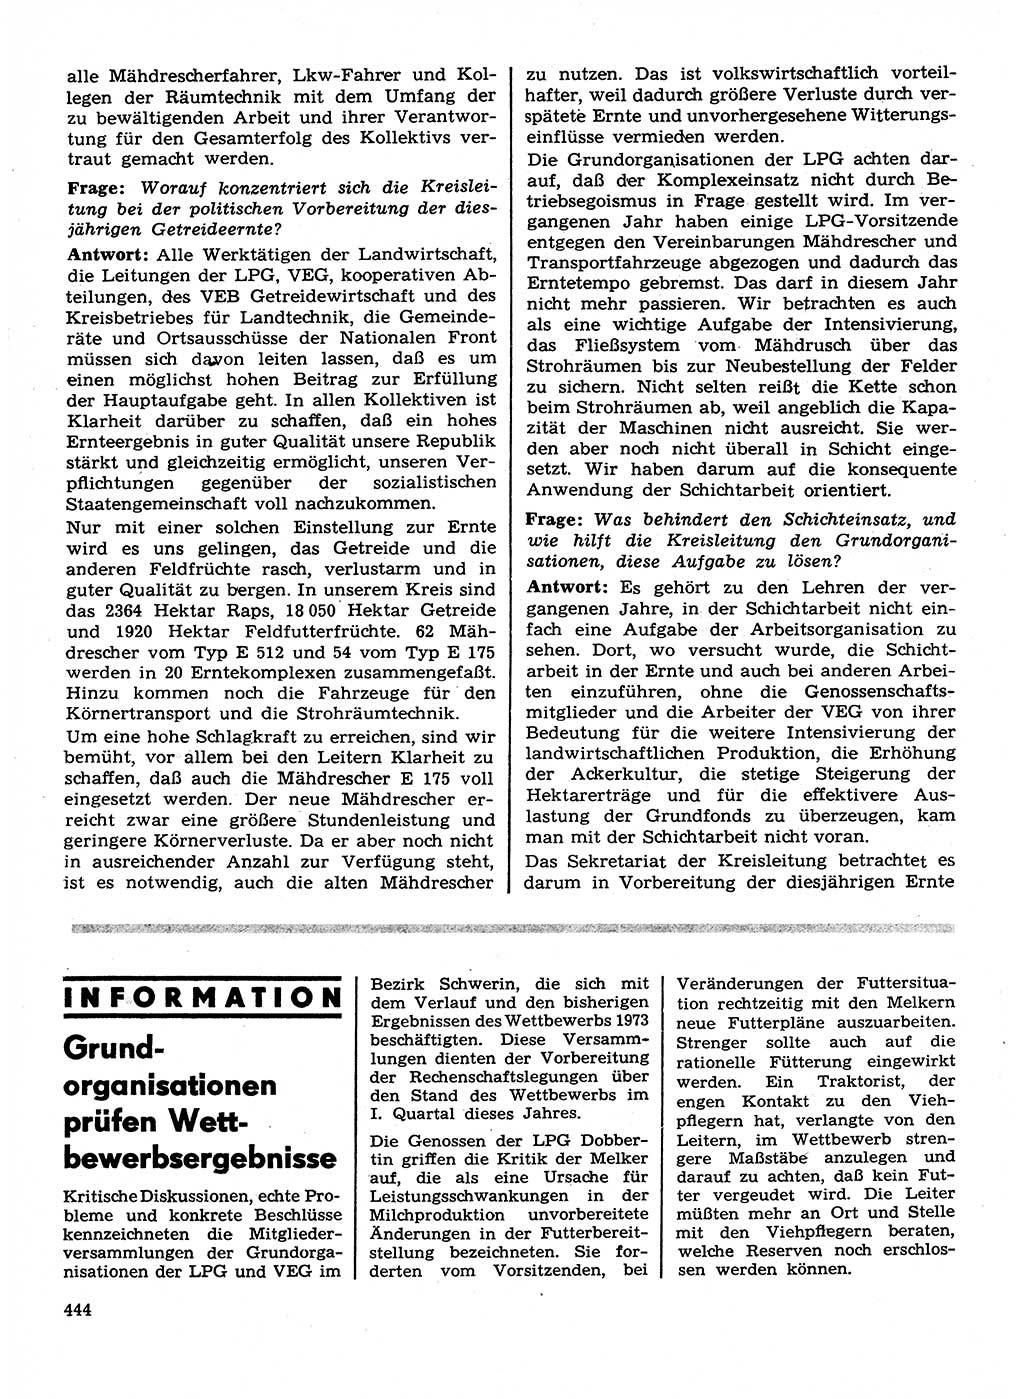 Neuer Weg (NW), Organ des Zentralkomitees (ZK) der SED (Sozialistische Einheitspartei Deutschlands) für Fragen des Parteilebens, 28. Jahrgang [Deutsche Demokratische Republik (DDR)] 1973, Seite 444 (NW ZK SED DDR 1973, S. 444)